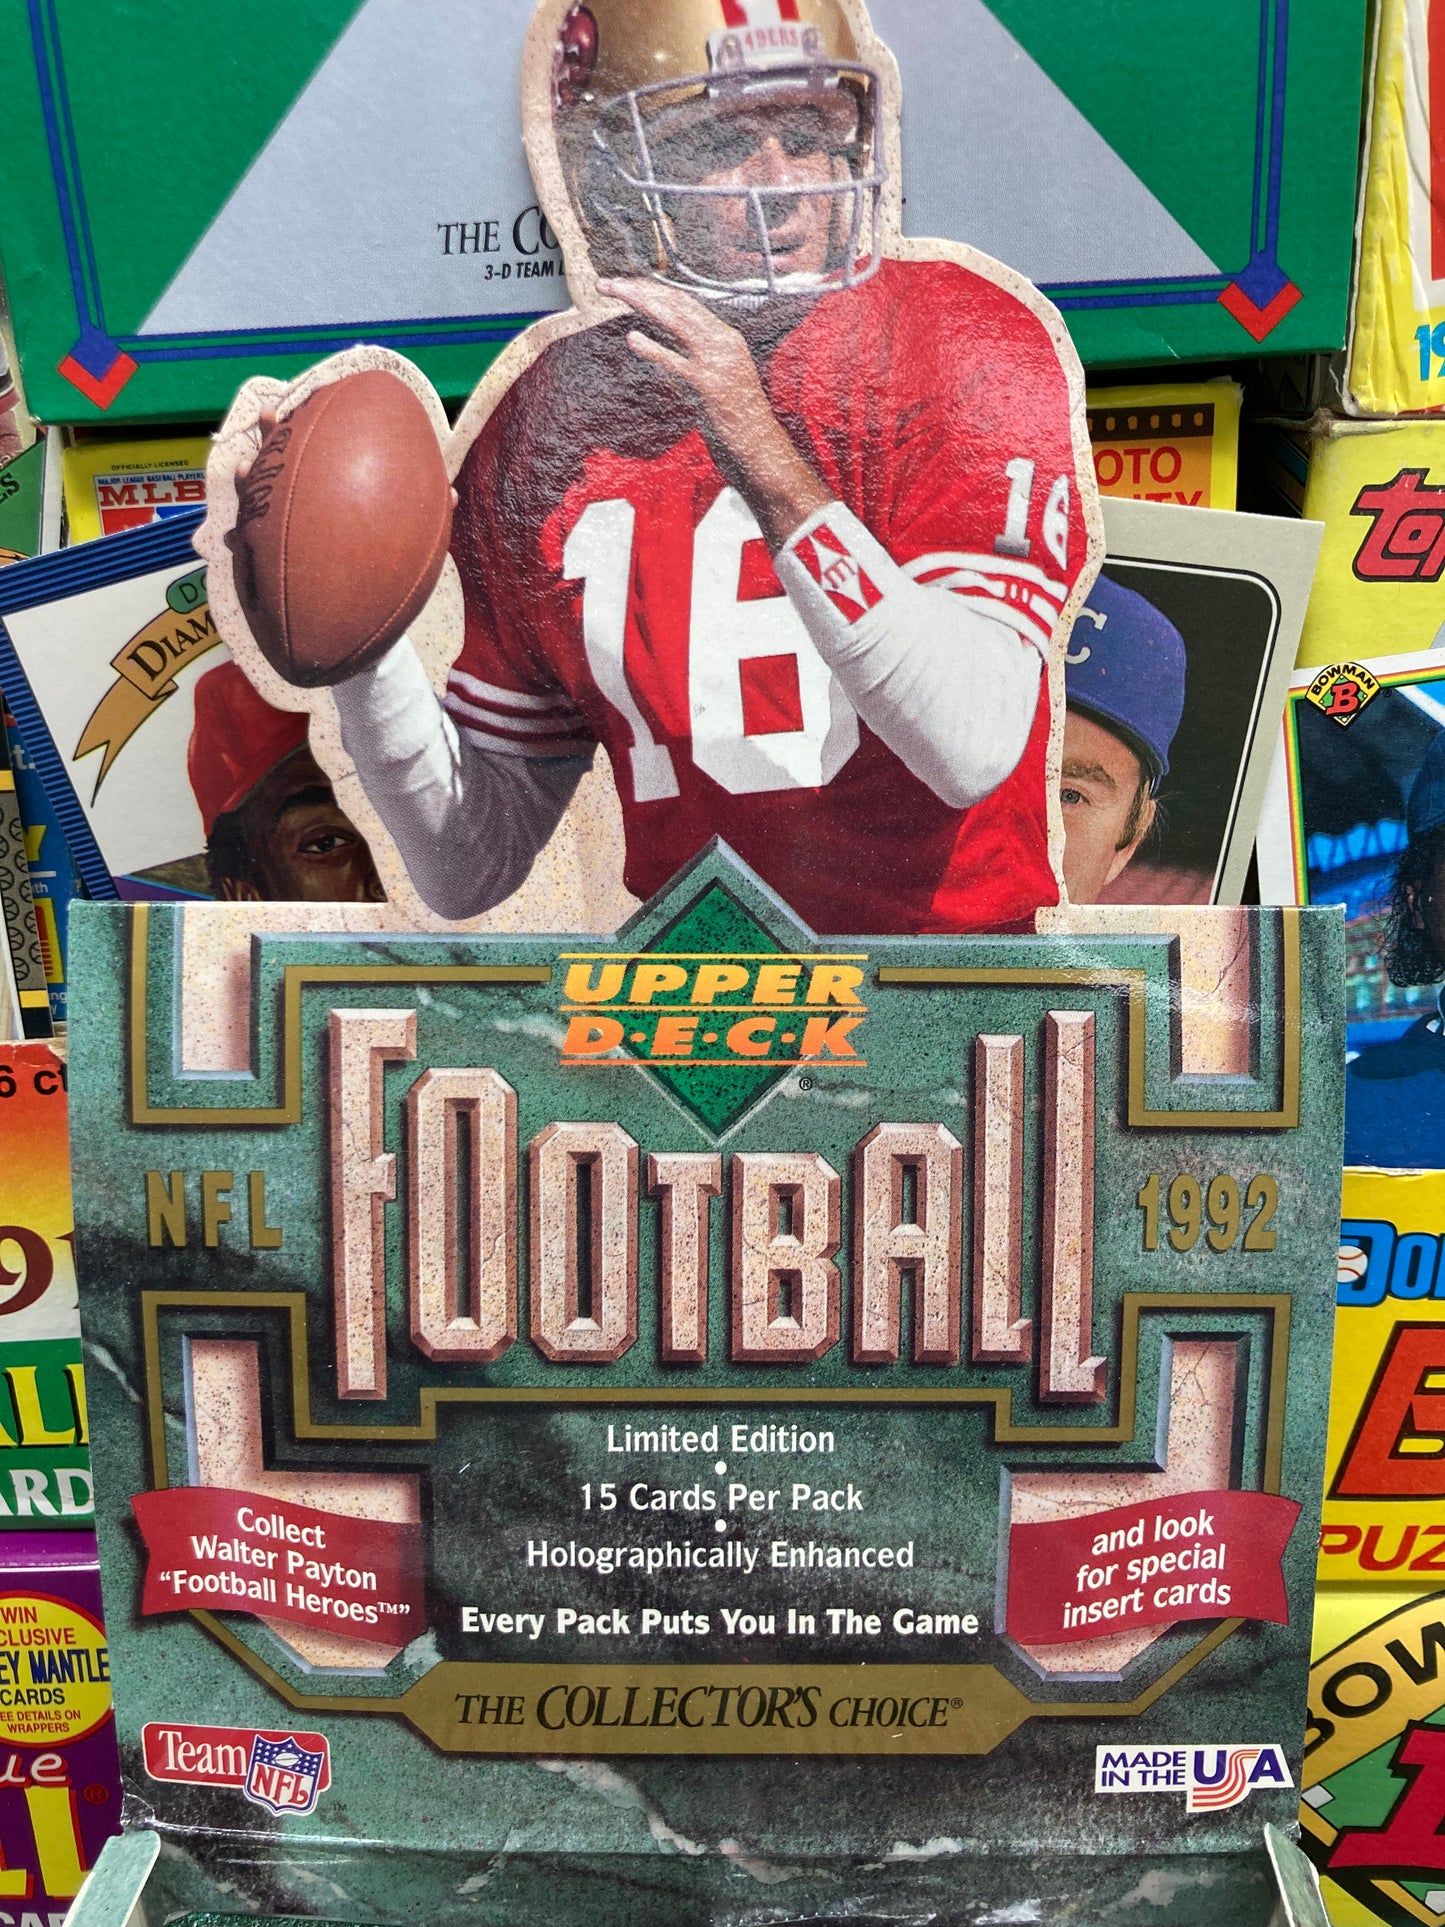 1992 Upper Deck Football Low Series Pack